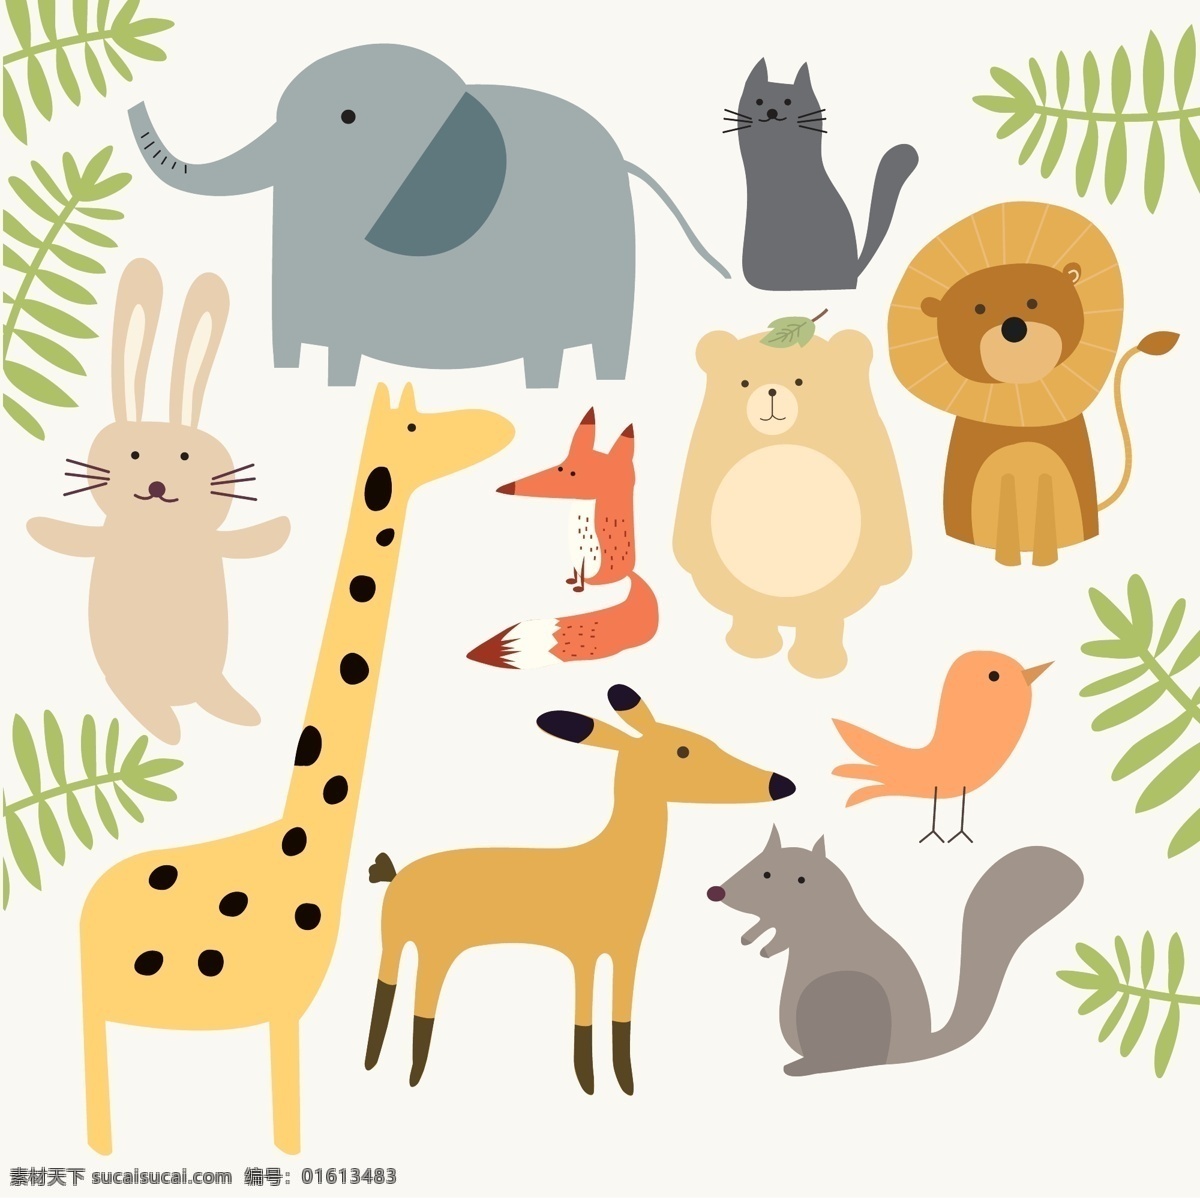 款 可爱 动物 矢量 大象 猫 兔子 熊 长颈鹿 狐狸 狮子 鸟 鹿 松鼠 树枝 文化艺术 绘画书法